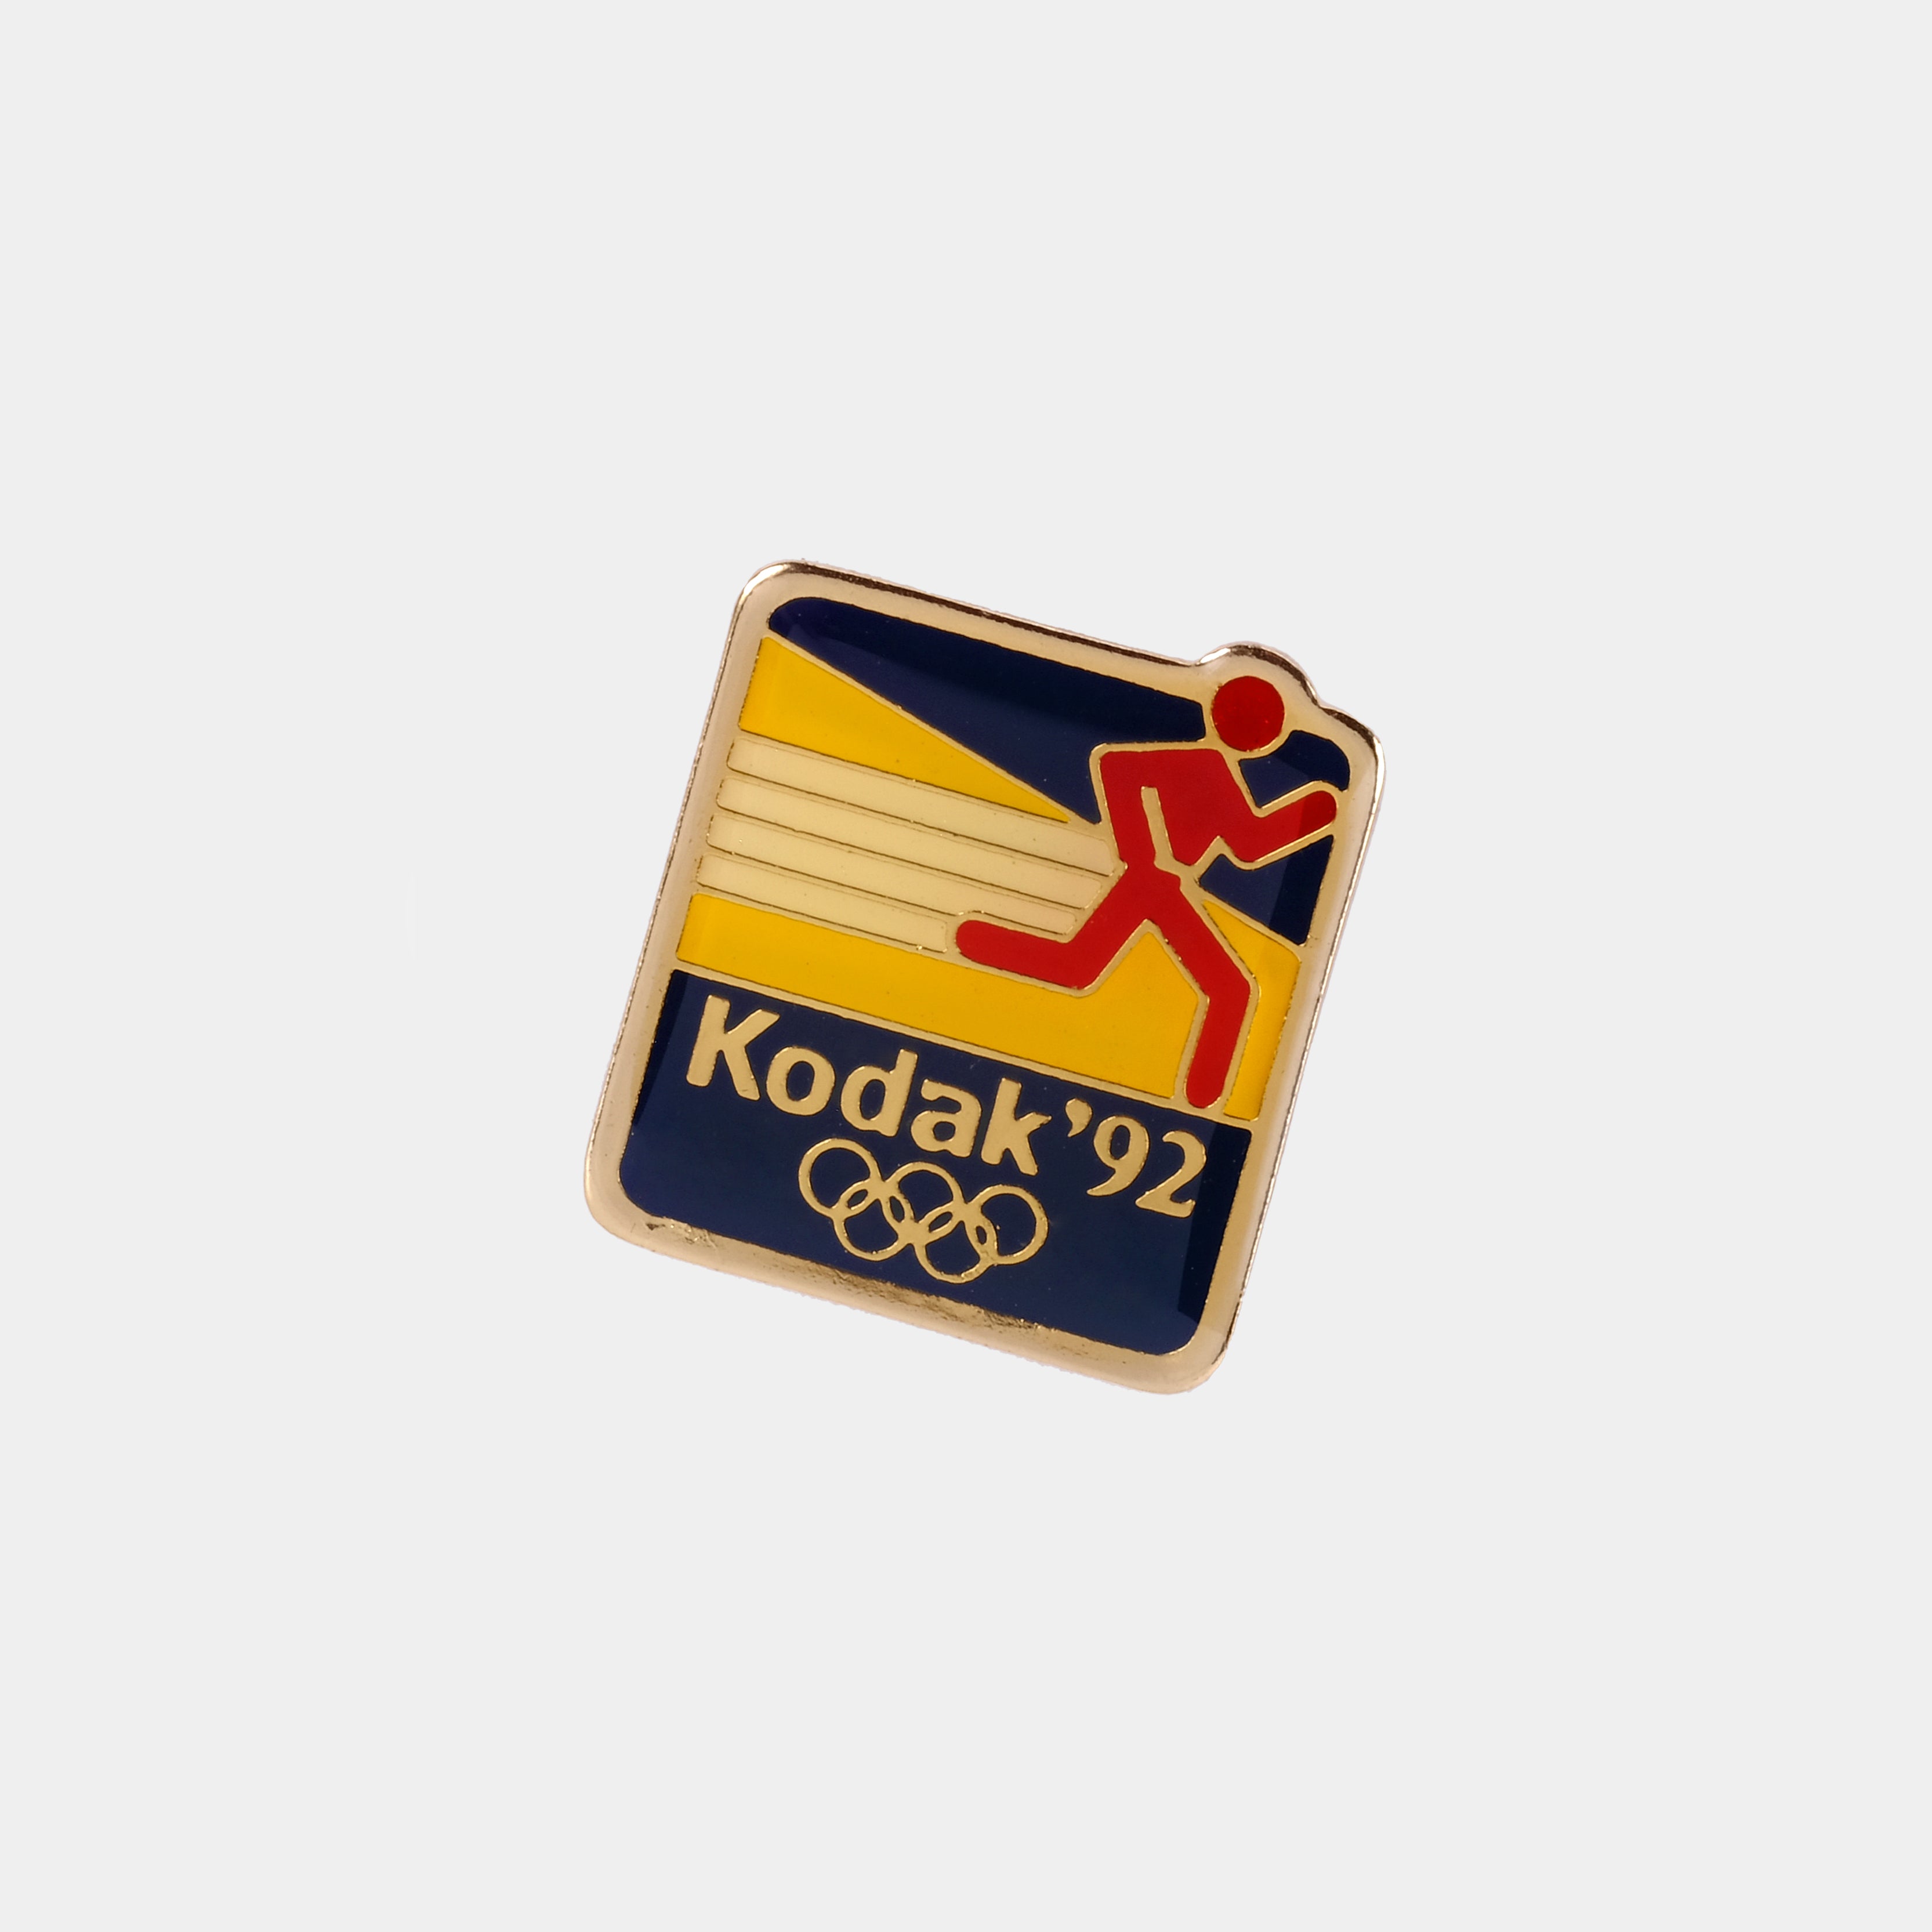 Kodak 1992 Olympics Vintage Enamel Pin